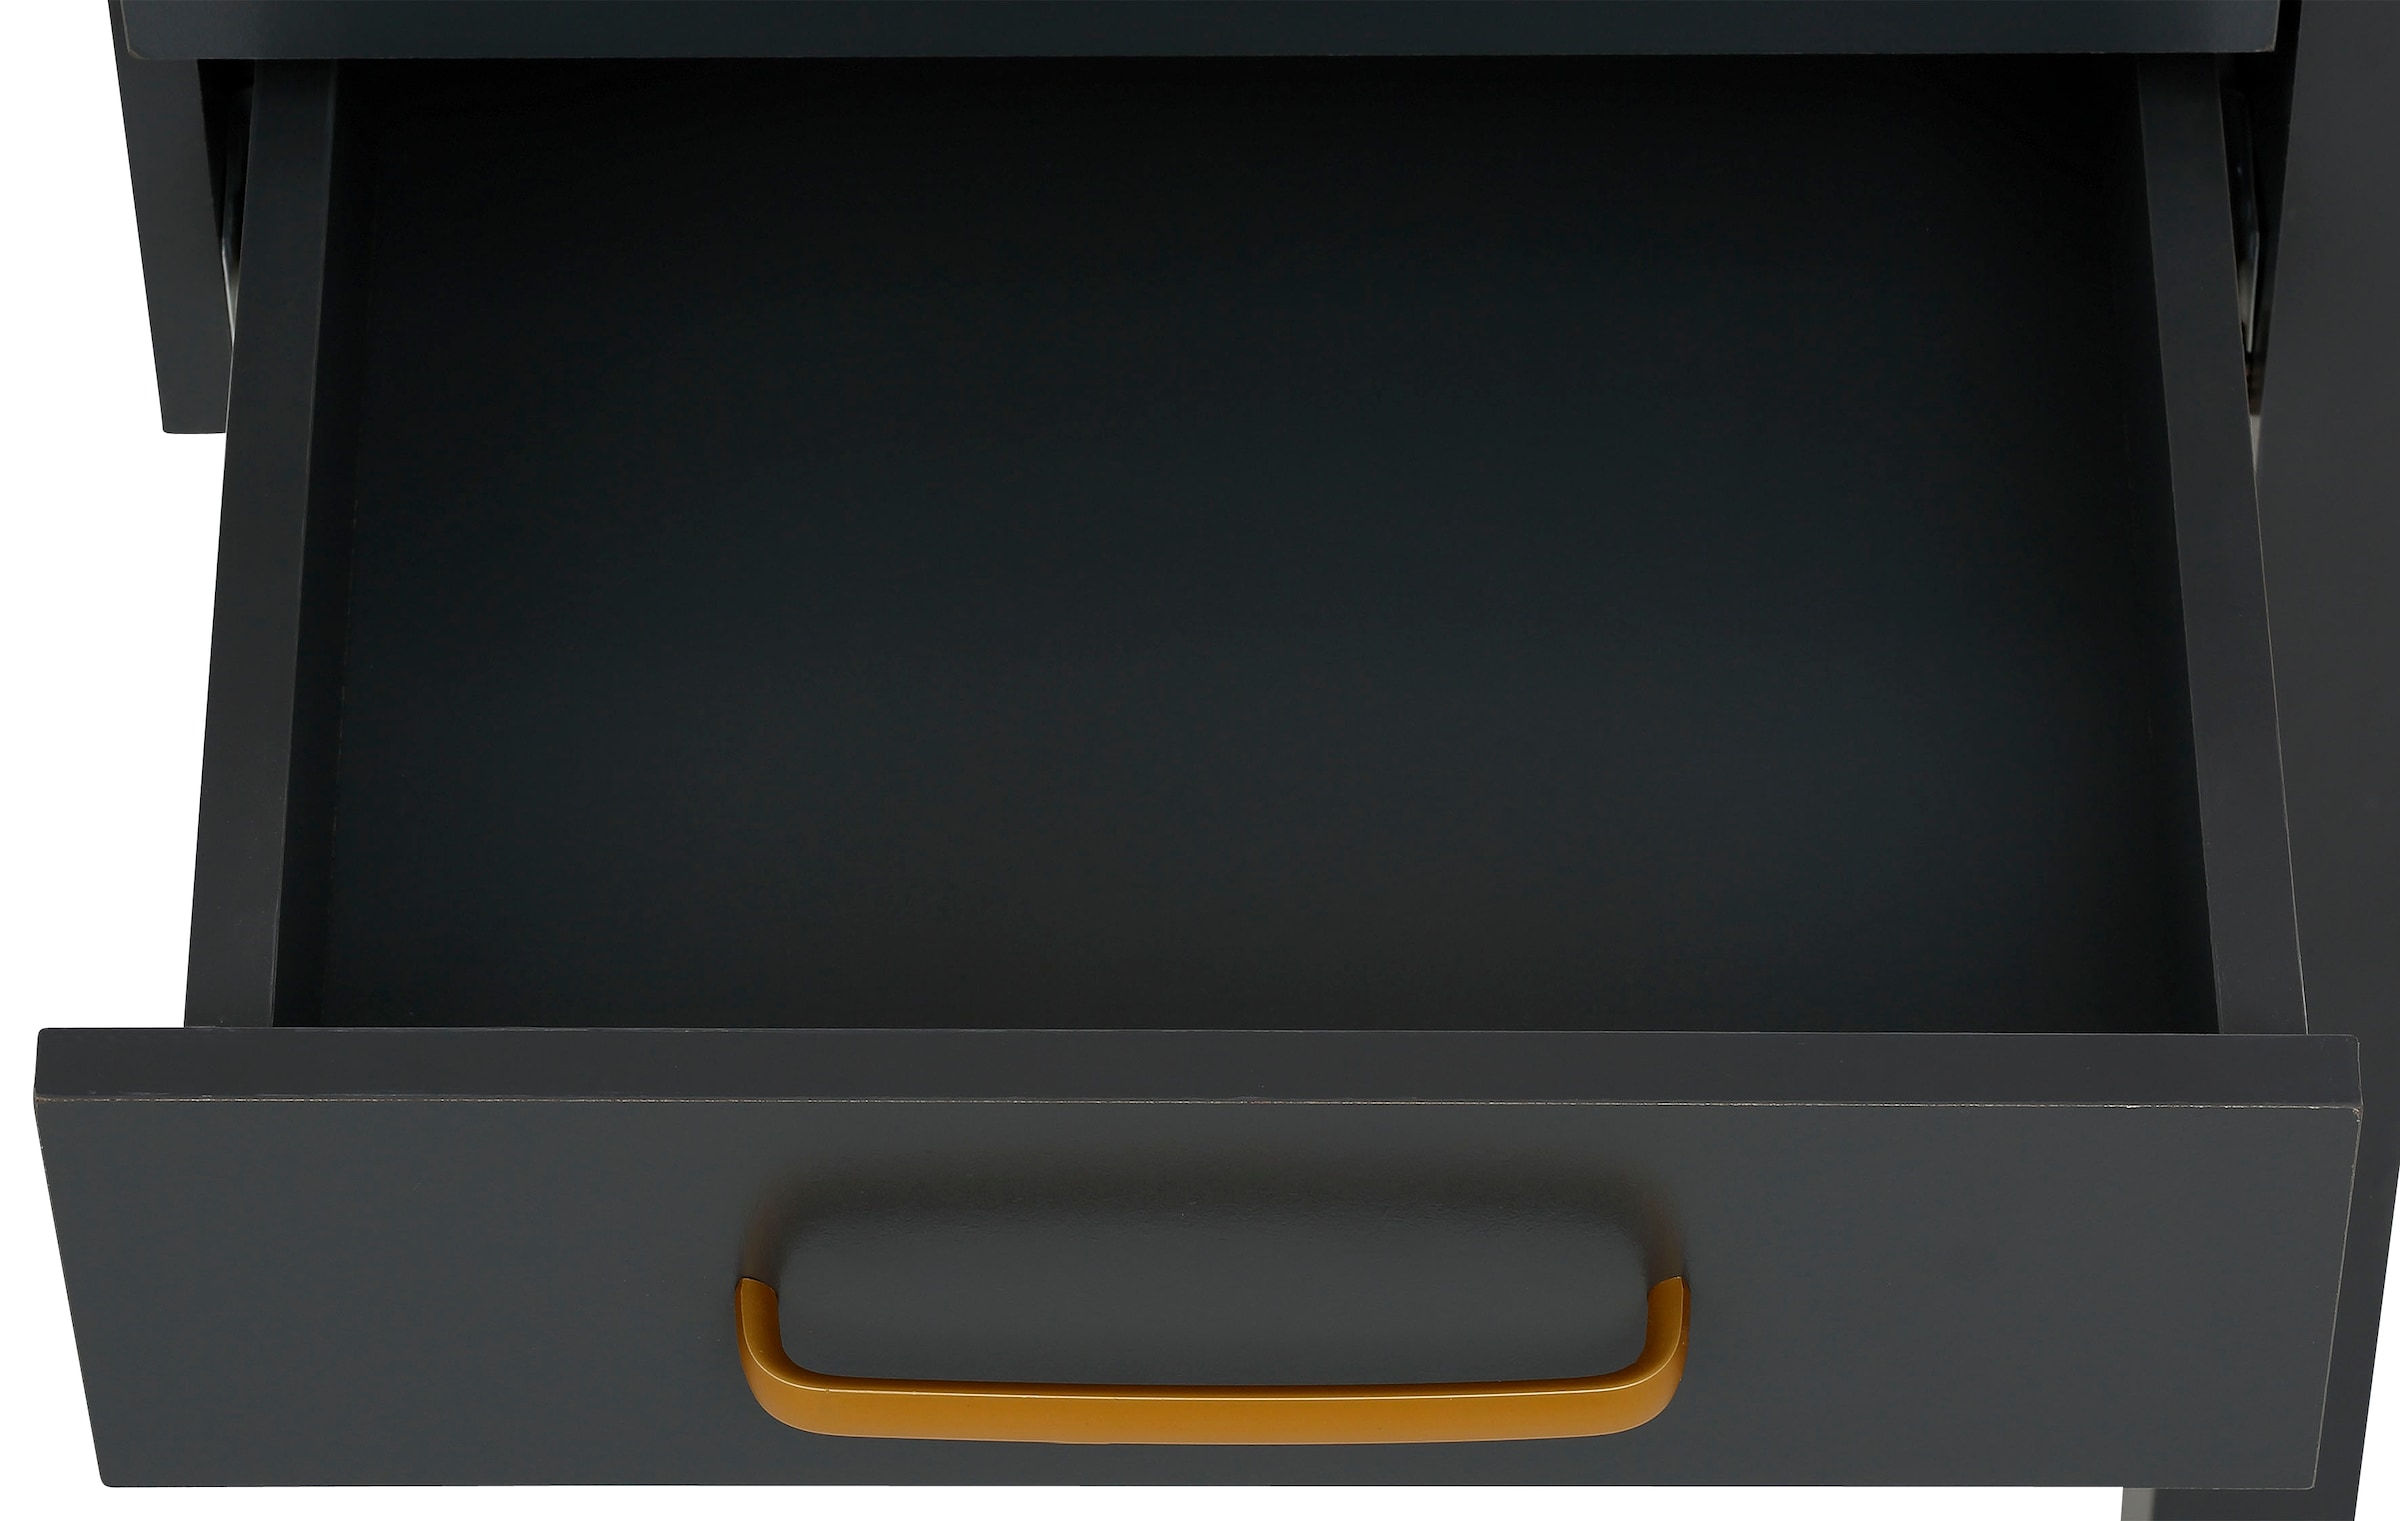 Home affaire Schreibtisch »Martinau«, mit 2 Schubladen, goldfarbene Griffen aus Metall, Höhe 76,5 cm